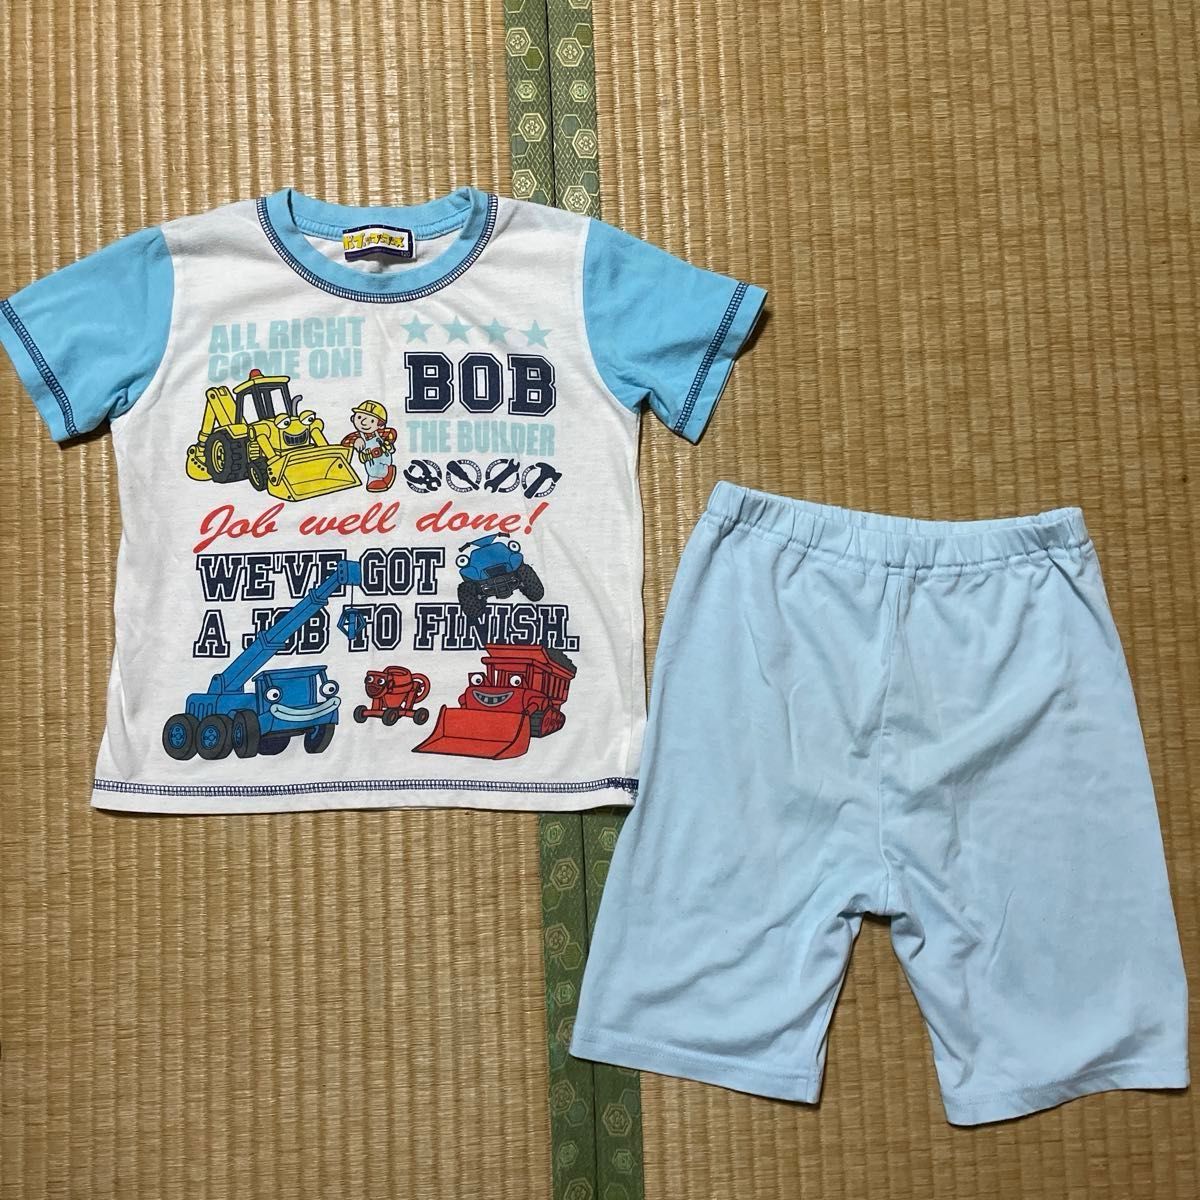 120cm 男児 ポケモン ピカチュウ トミカ ボブとはたらくブーブーズ パジャマ セットアップ ルームウェア Tシャツ